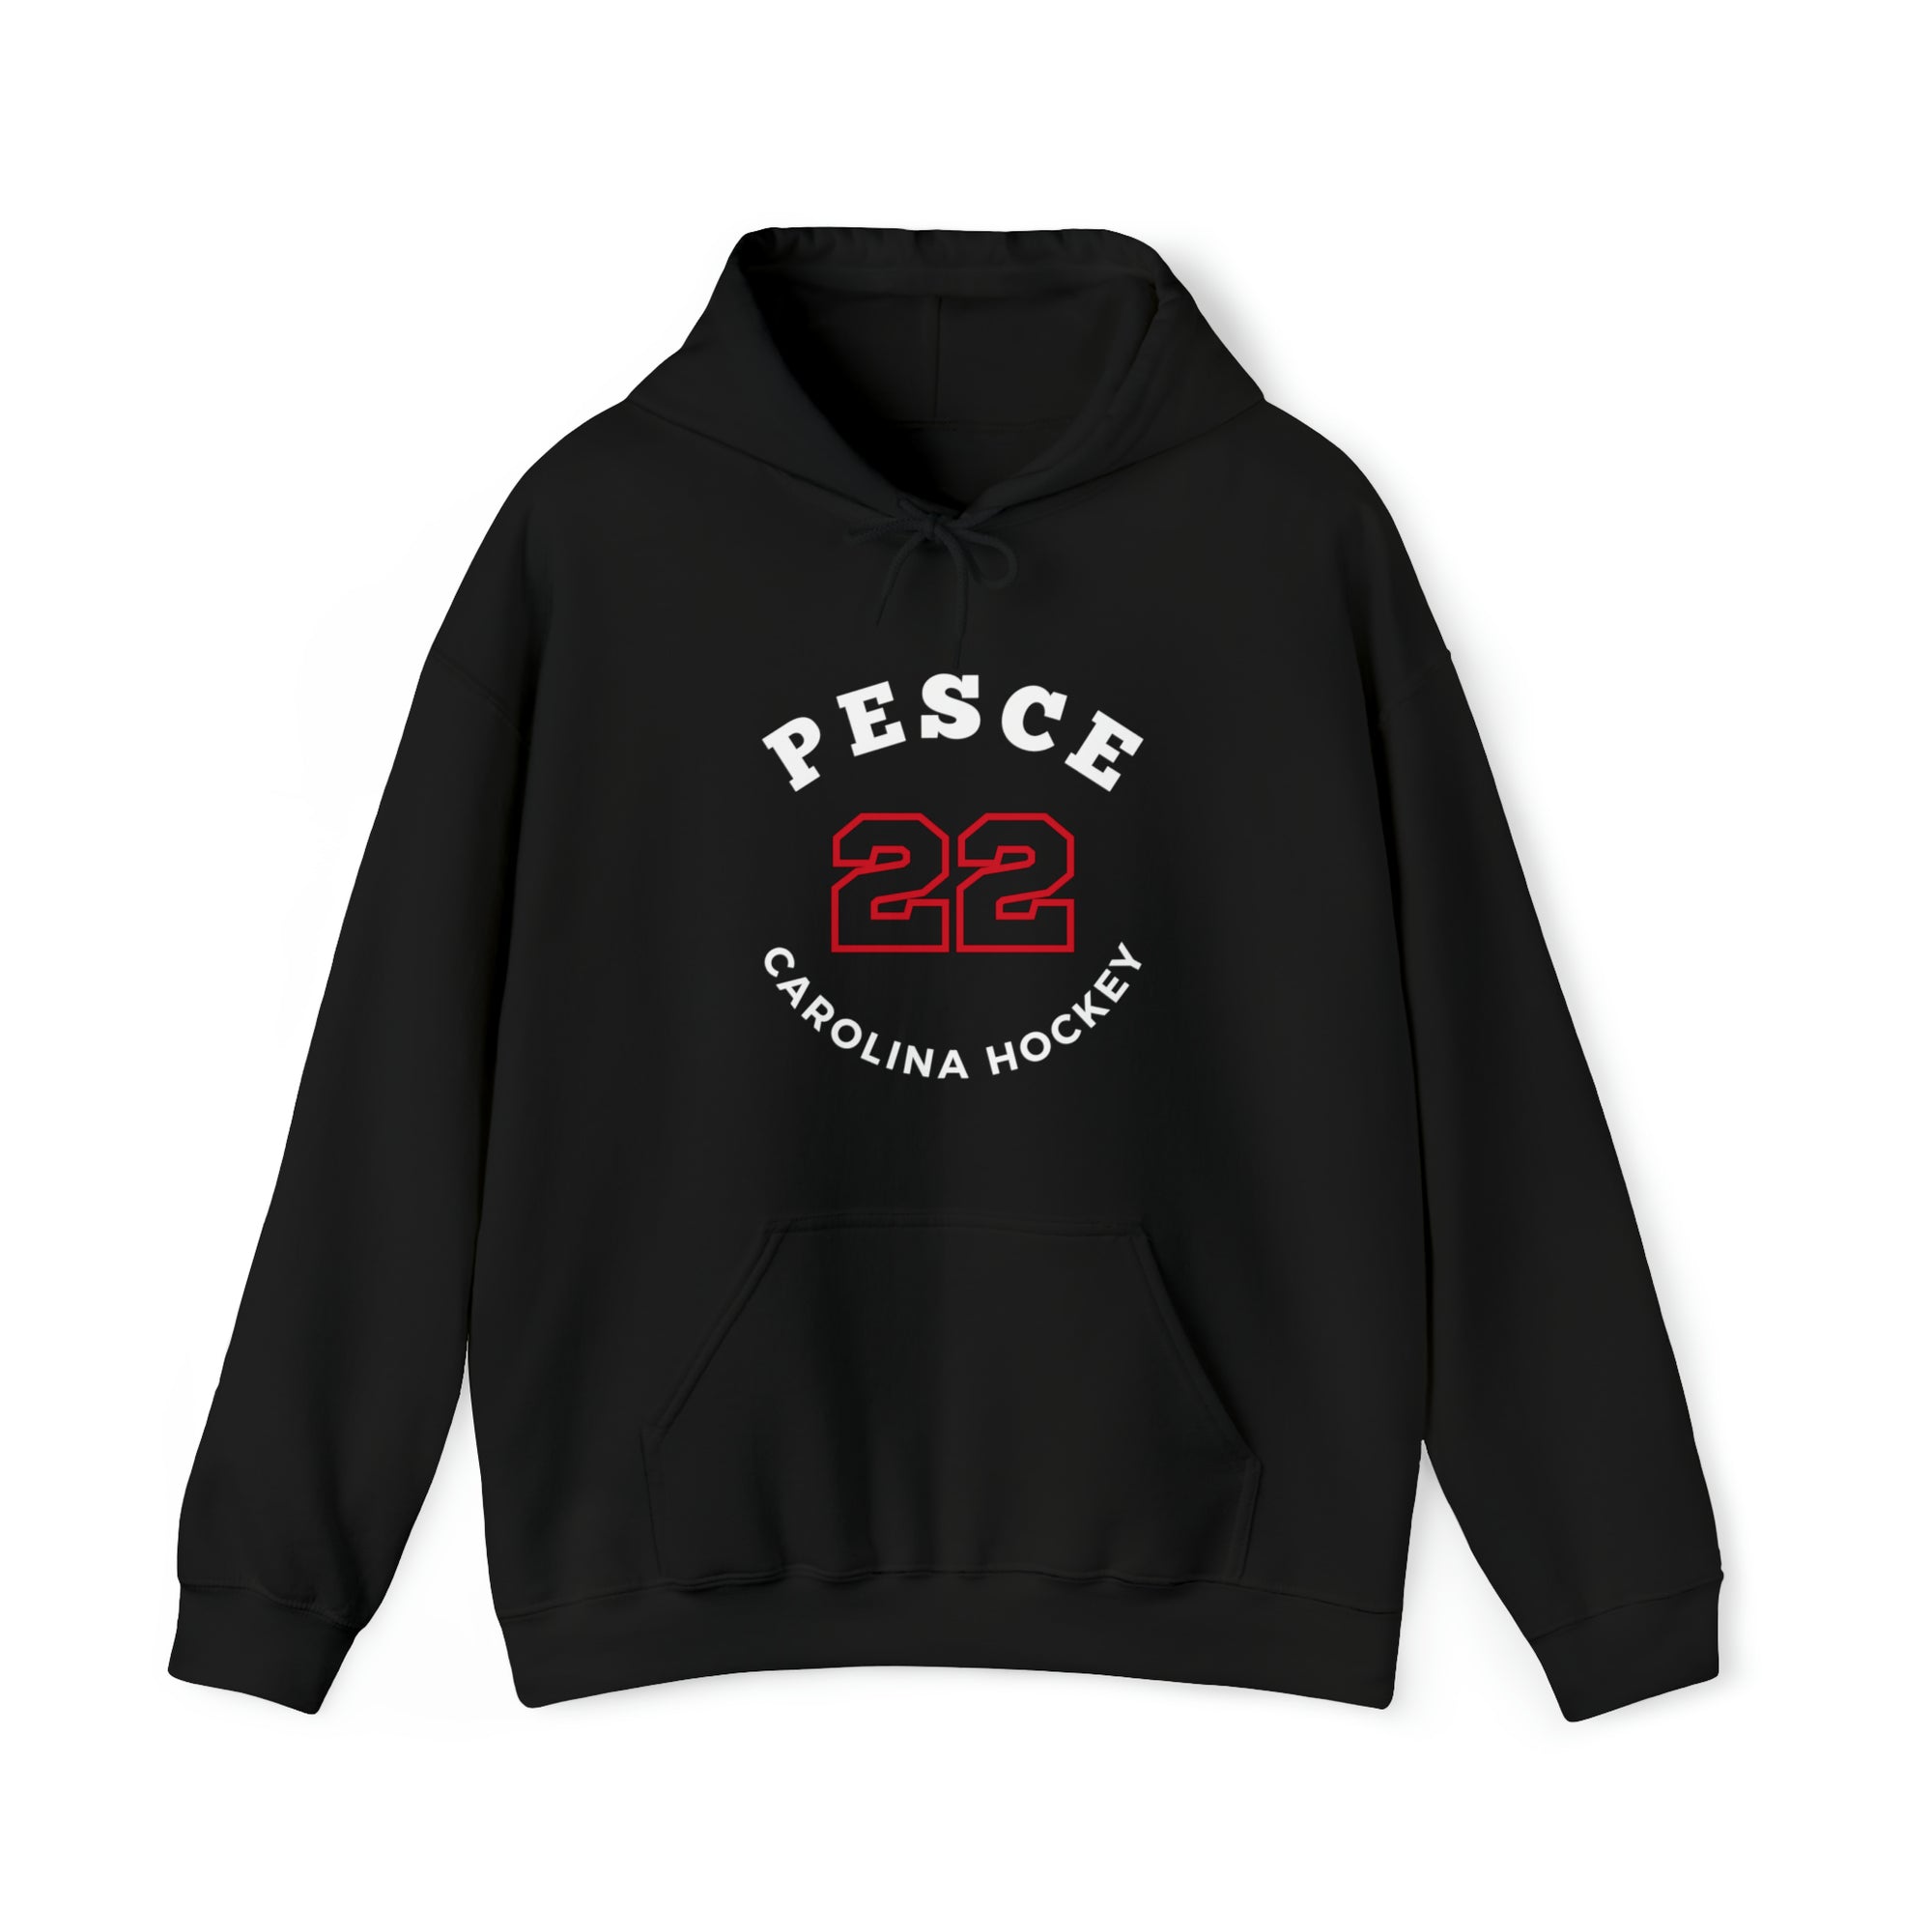 Pesce 22 Carolina Hockey Number Arch Design Unisex Hooded Sweatshirt